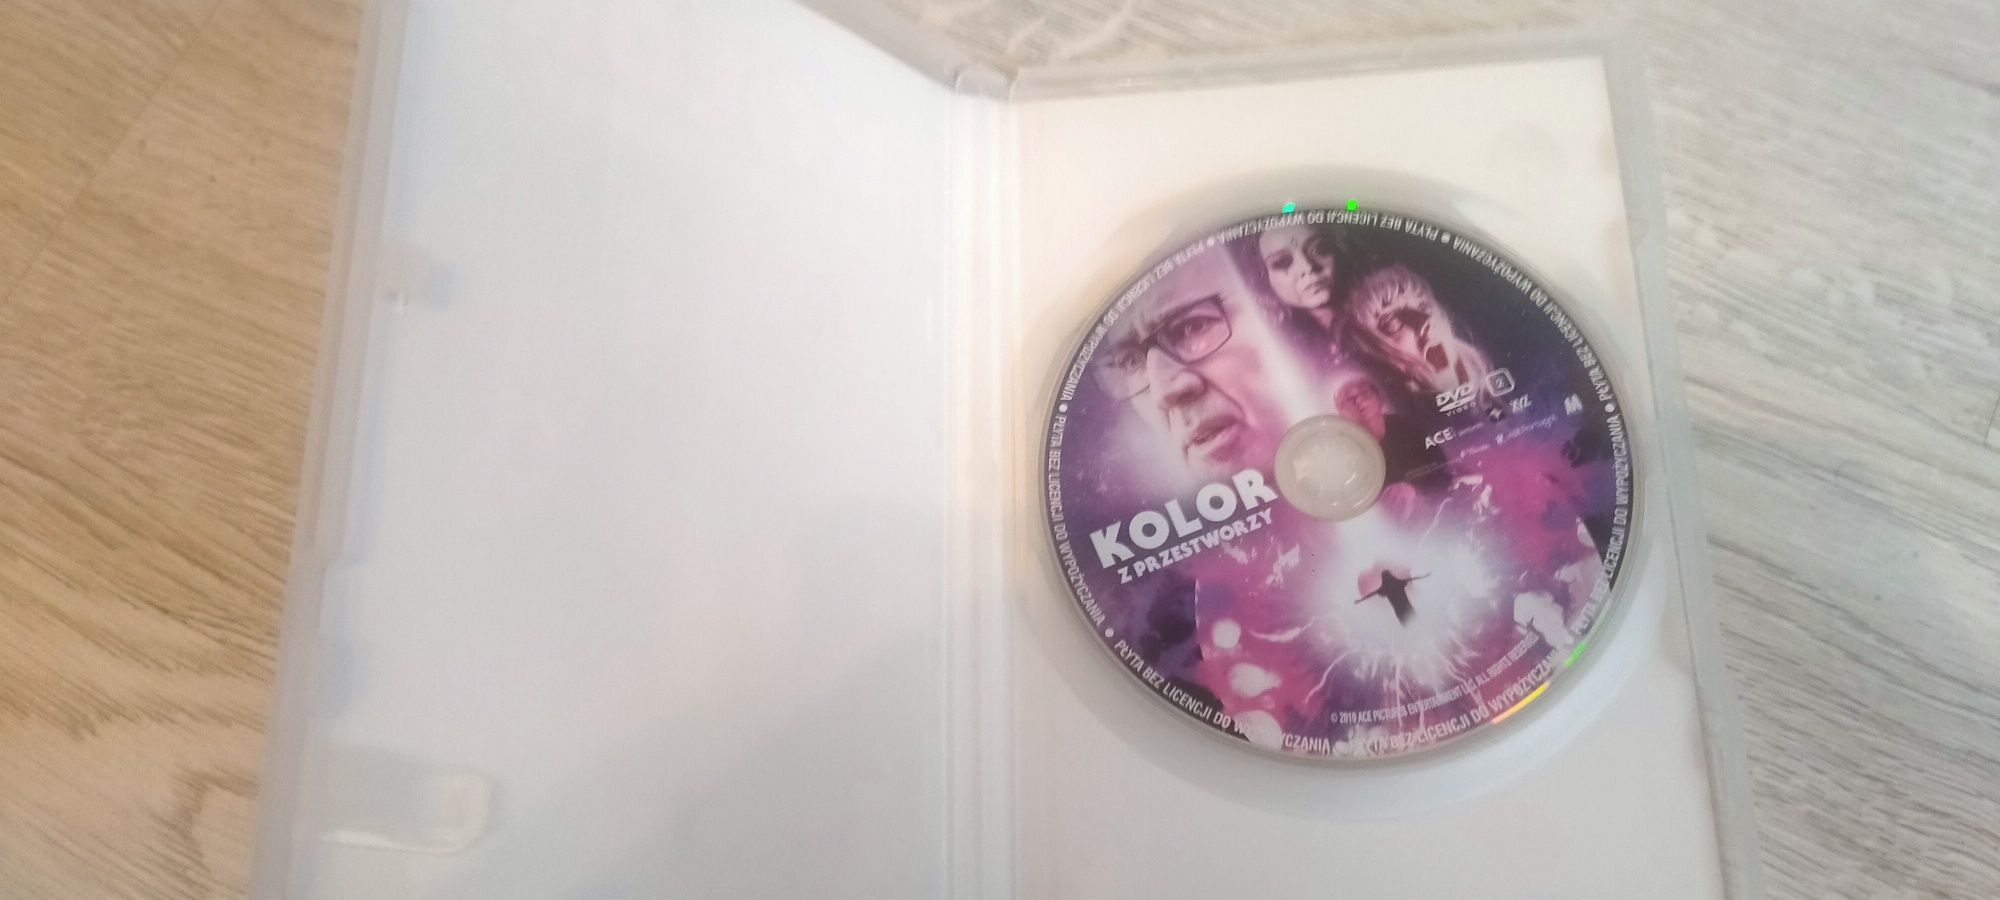 Film DVD Kolor z przestworzy